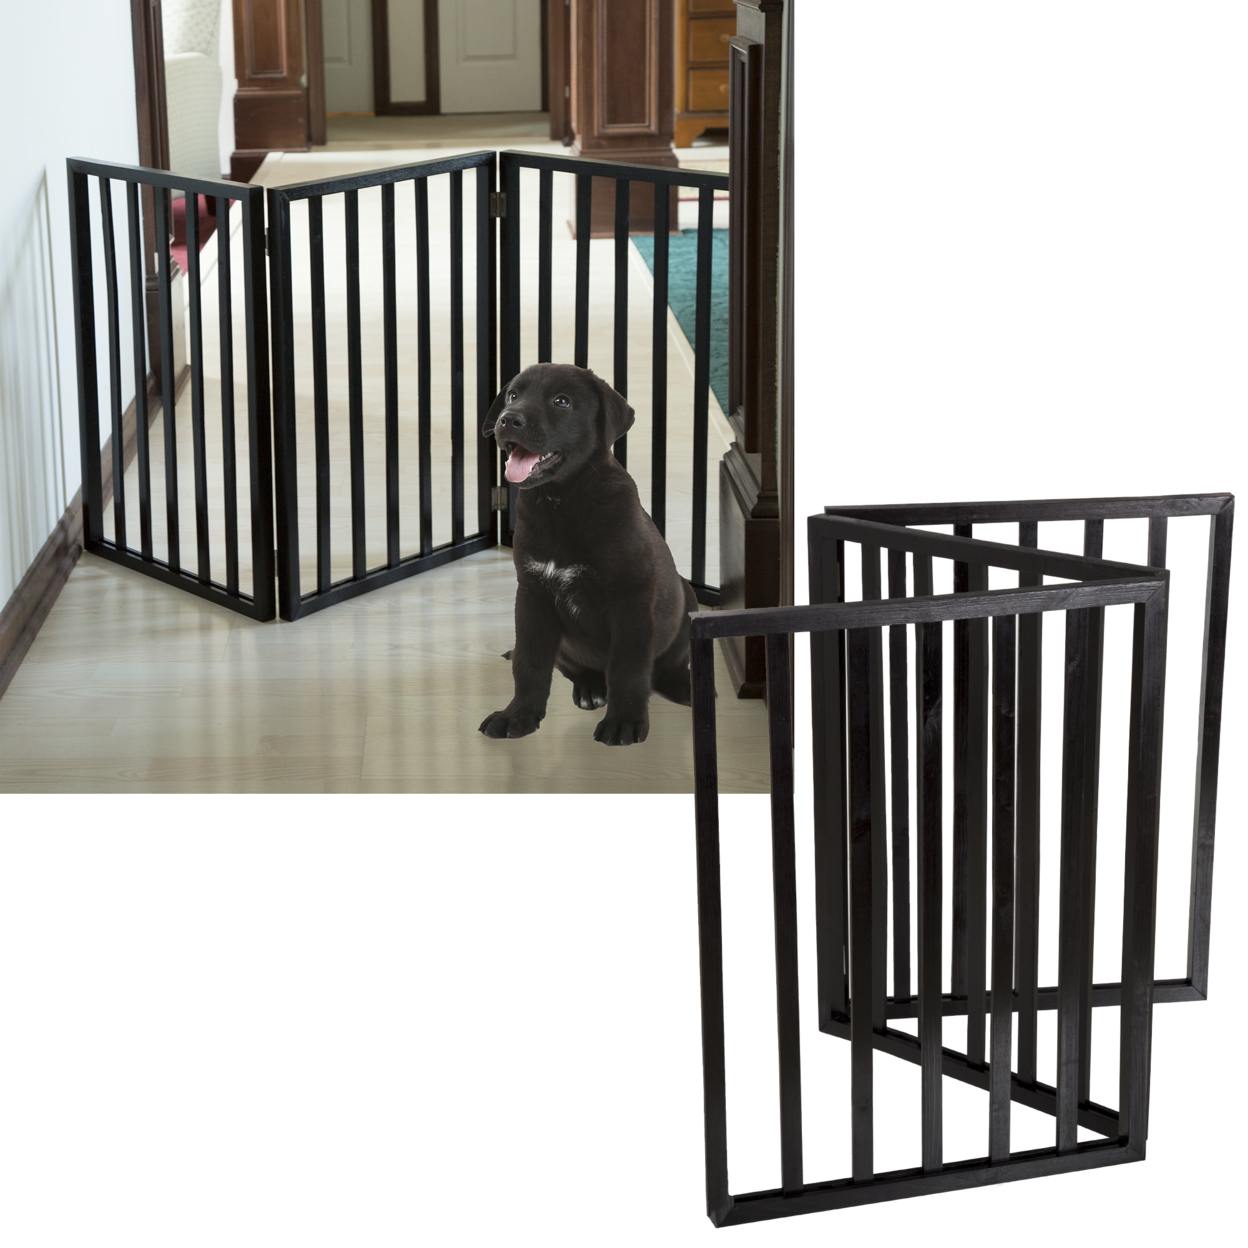 PETMAKER Freestanding Wooden Pet Gate